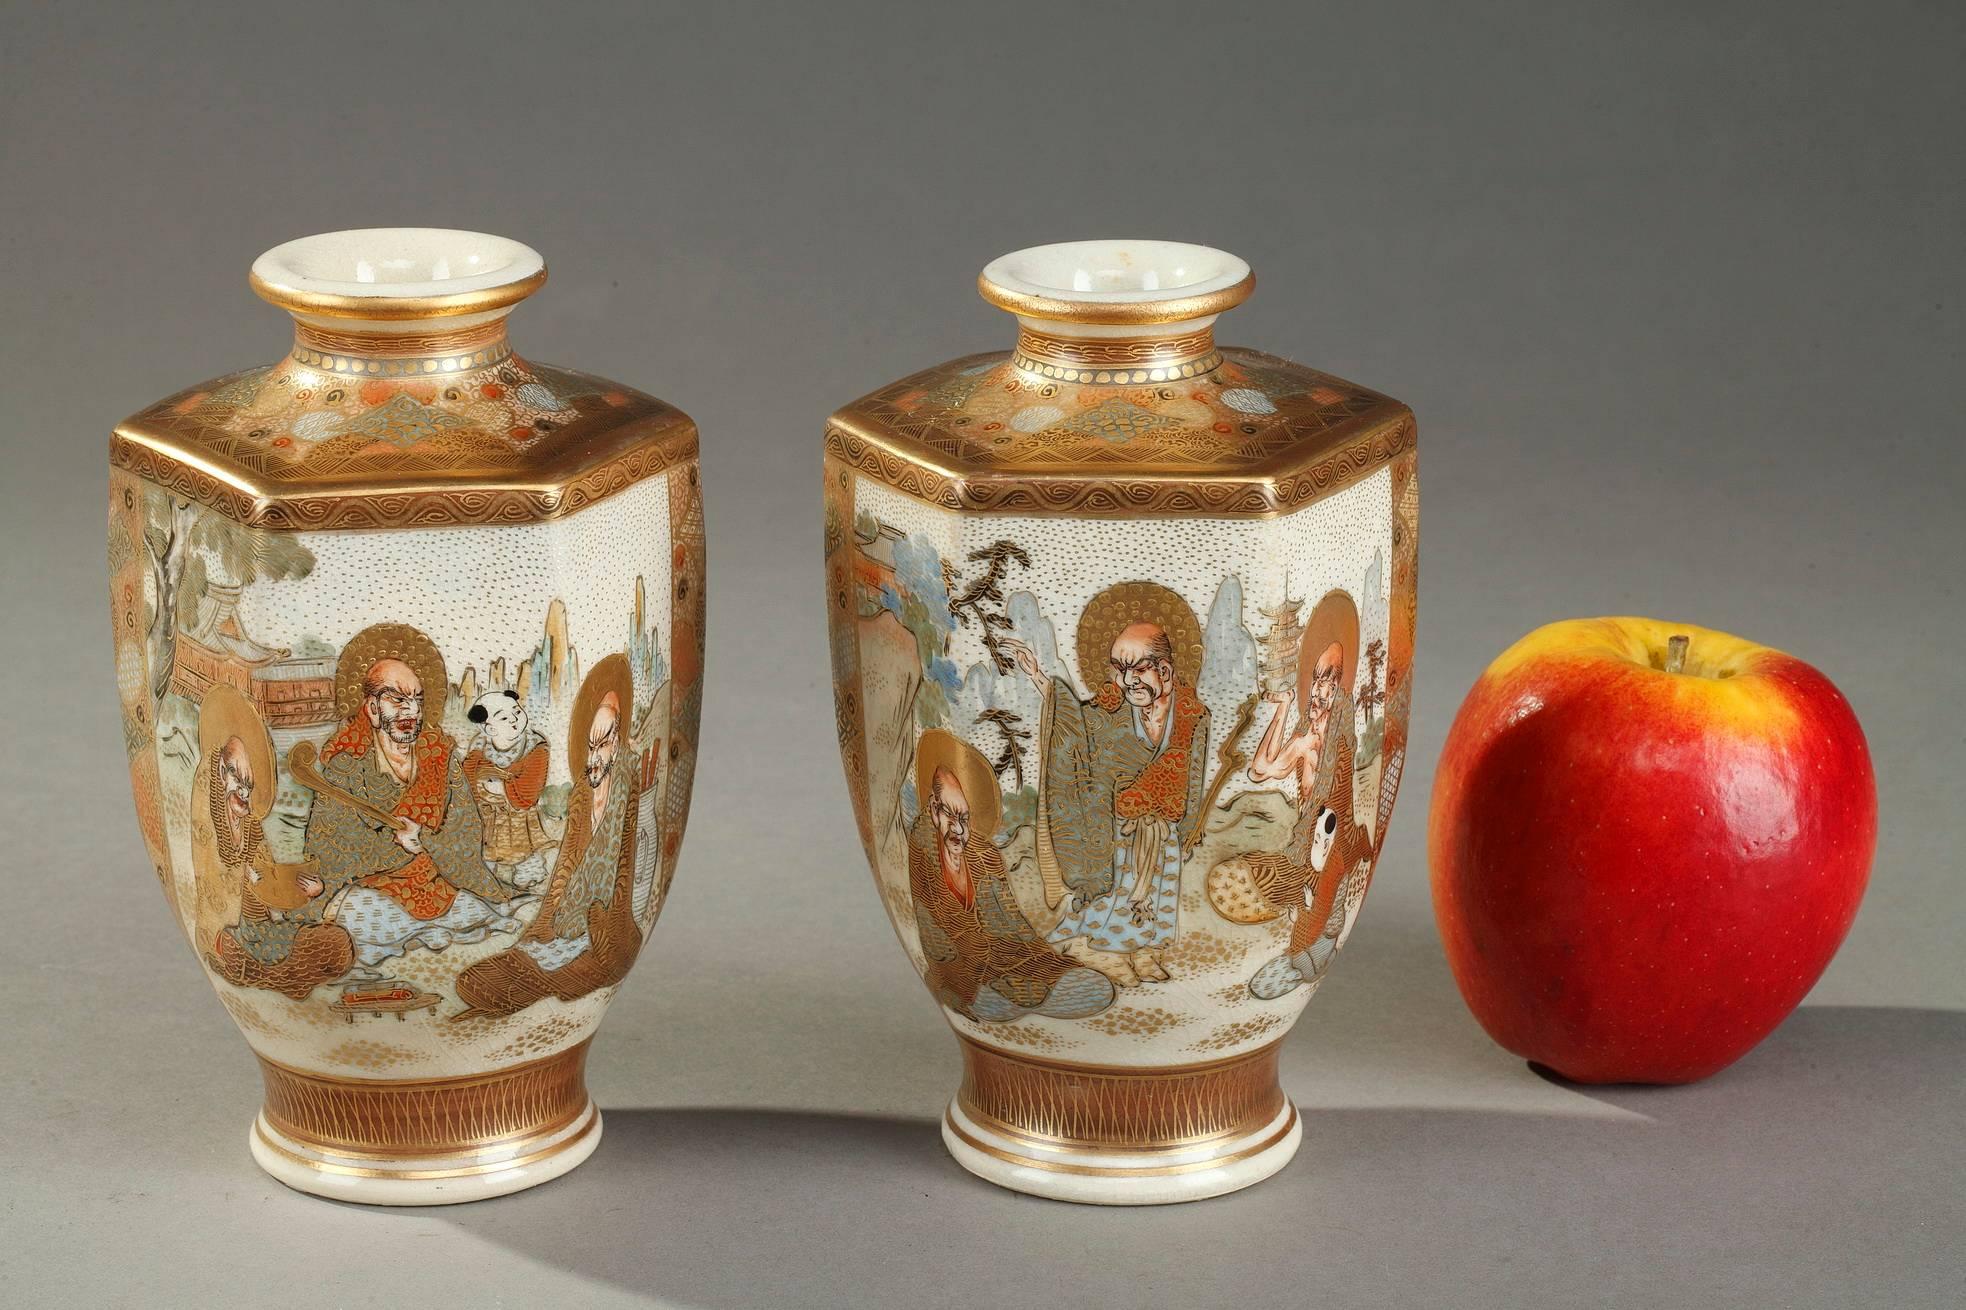 Zwei sechseckige Satsuma-Vasen aus Porzellan, polychrom emailliert und vergoldet. Der Bauch ist mit verschlungenen japanischen Schriftzeichen in einer Landschaft verziert, der Hals und die Schulter mit geometrischen Mustern. Jede Vase trägt die